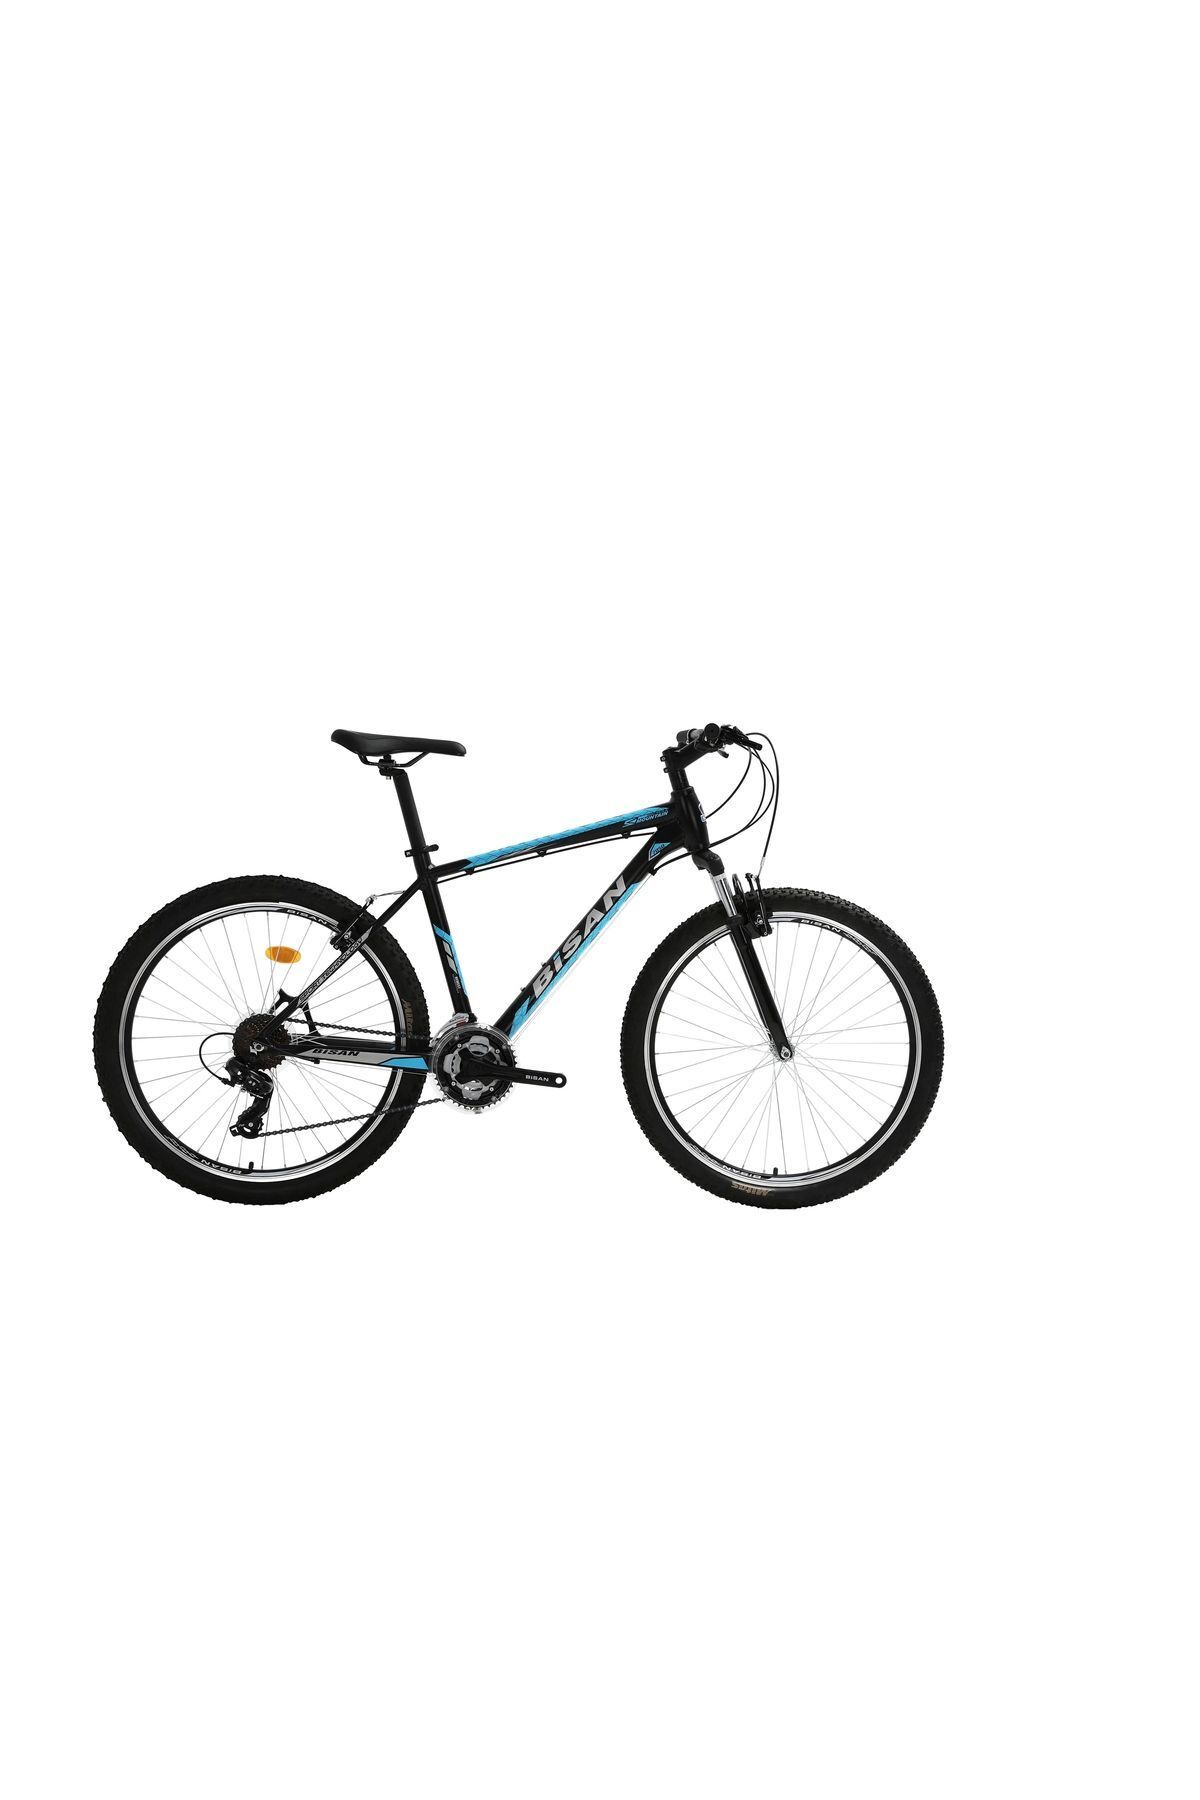 Bisan Mtx 7050 V Fren 21 Vites 27,5 Jant Dağ Bisikleti Siyah Mavi 19 Kadro